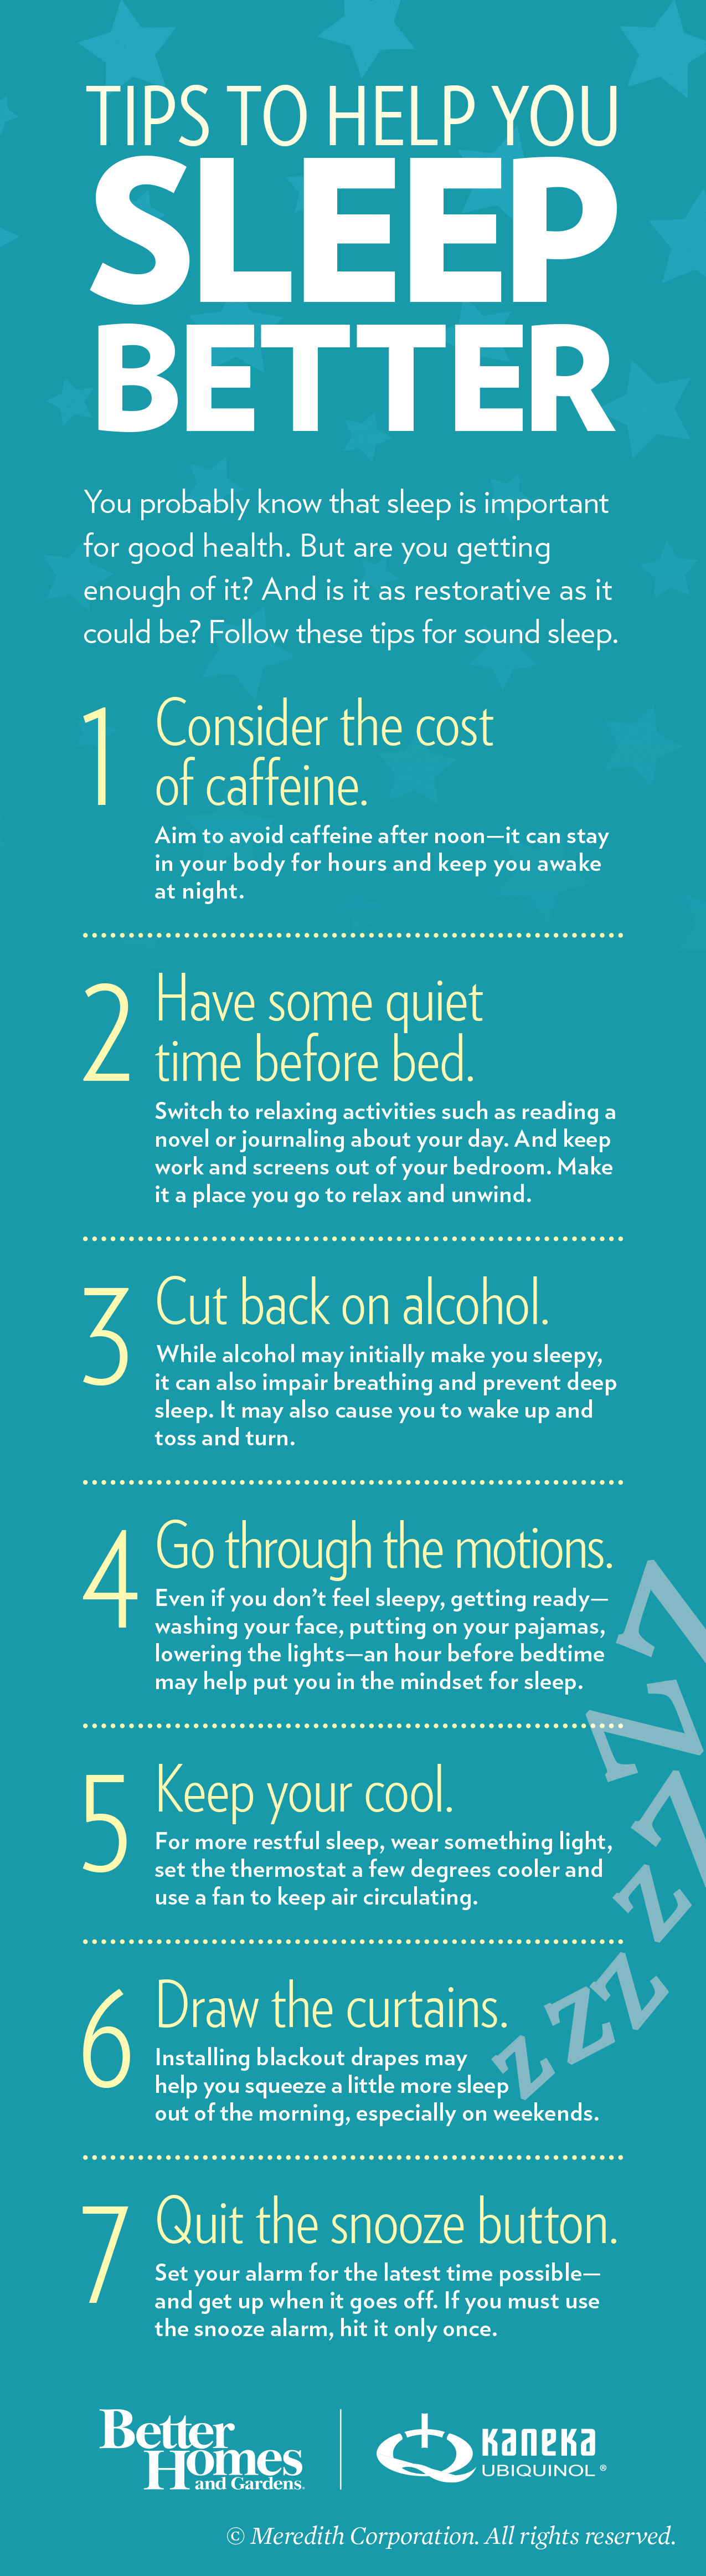 seven tips for better sleep infographic